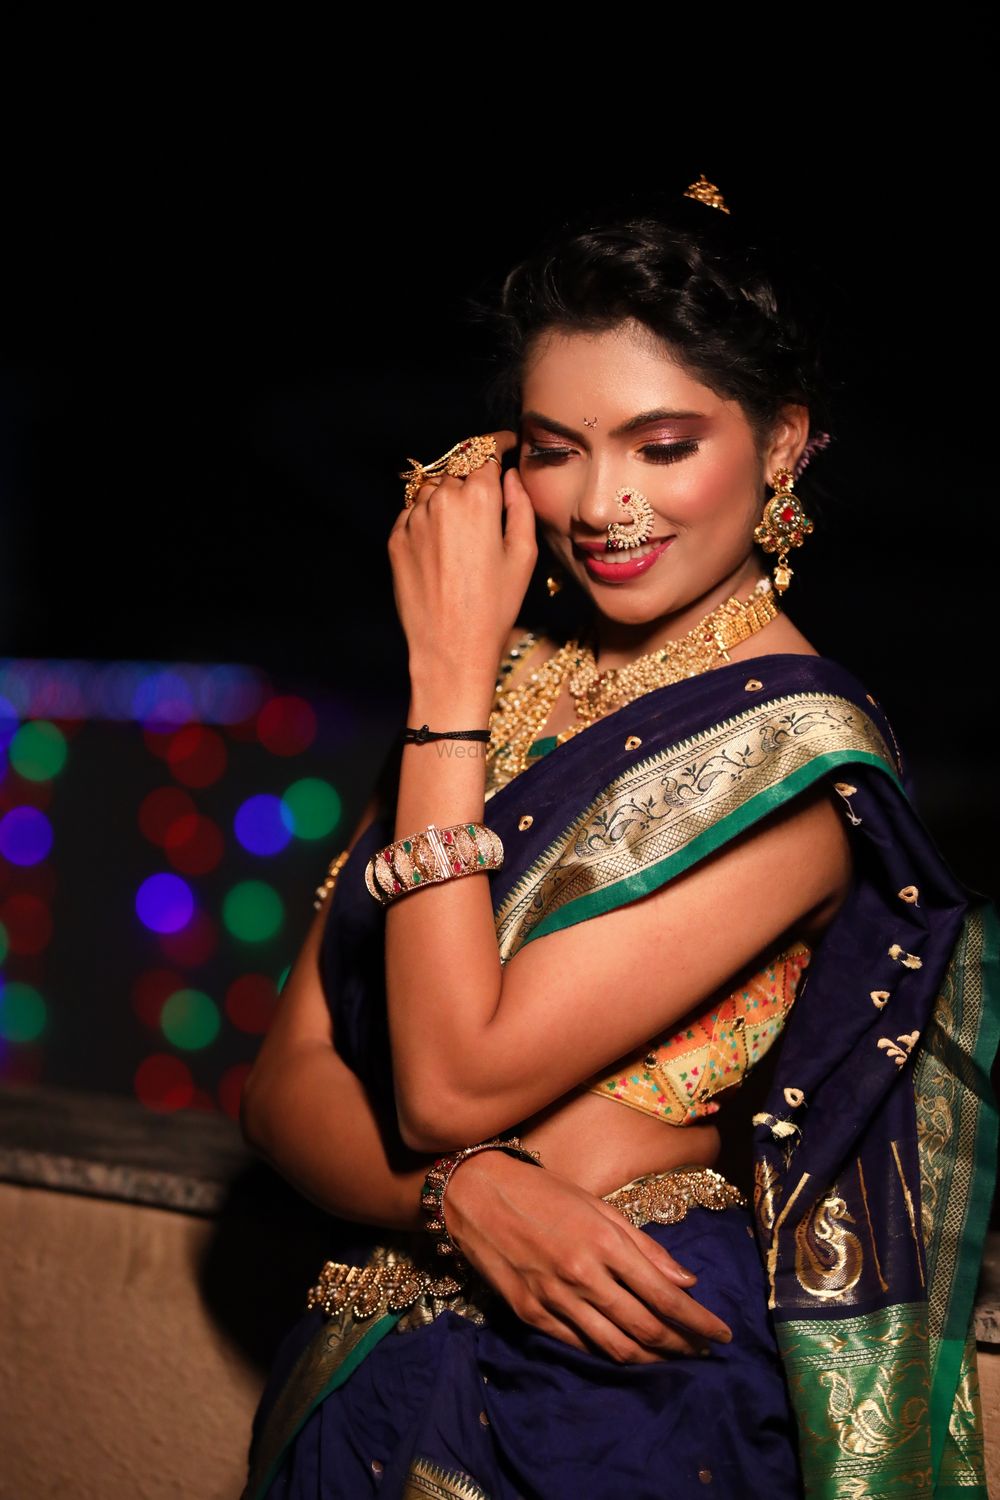 Photo From Marathi brides by Natashaa tilwani ❤️ - By Natashaa Tilwani